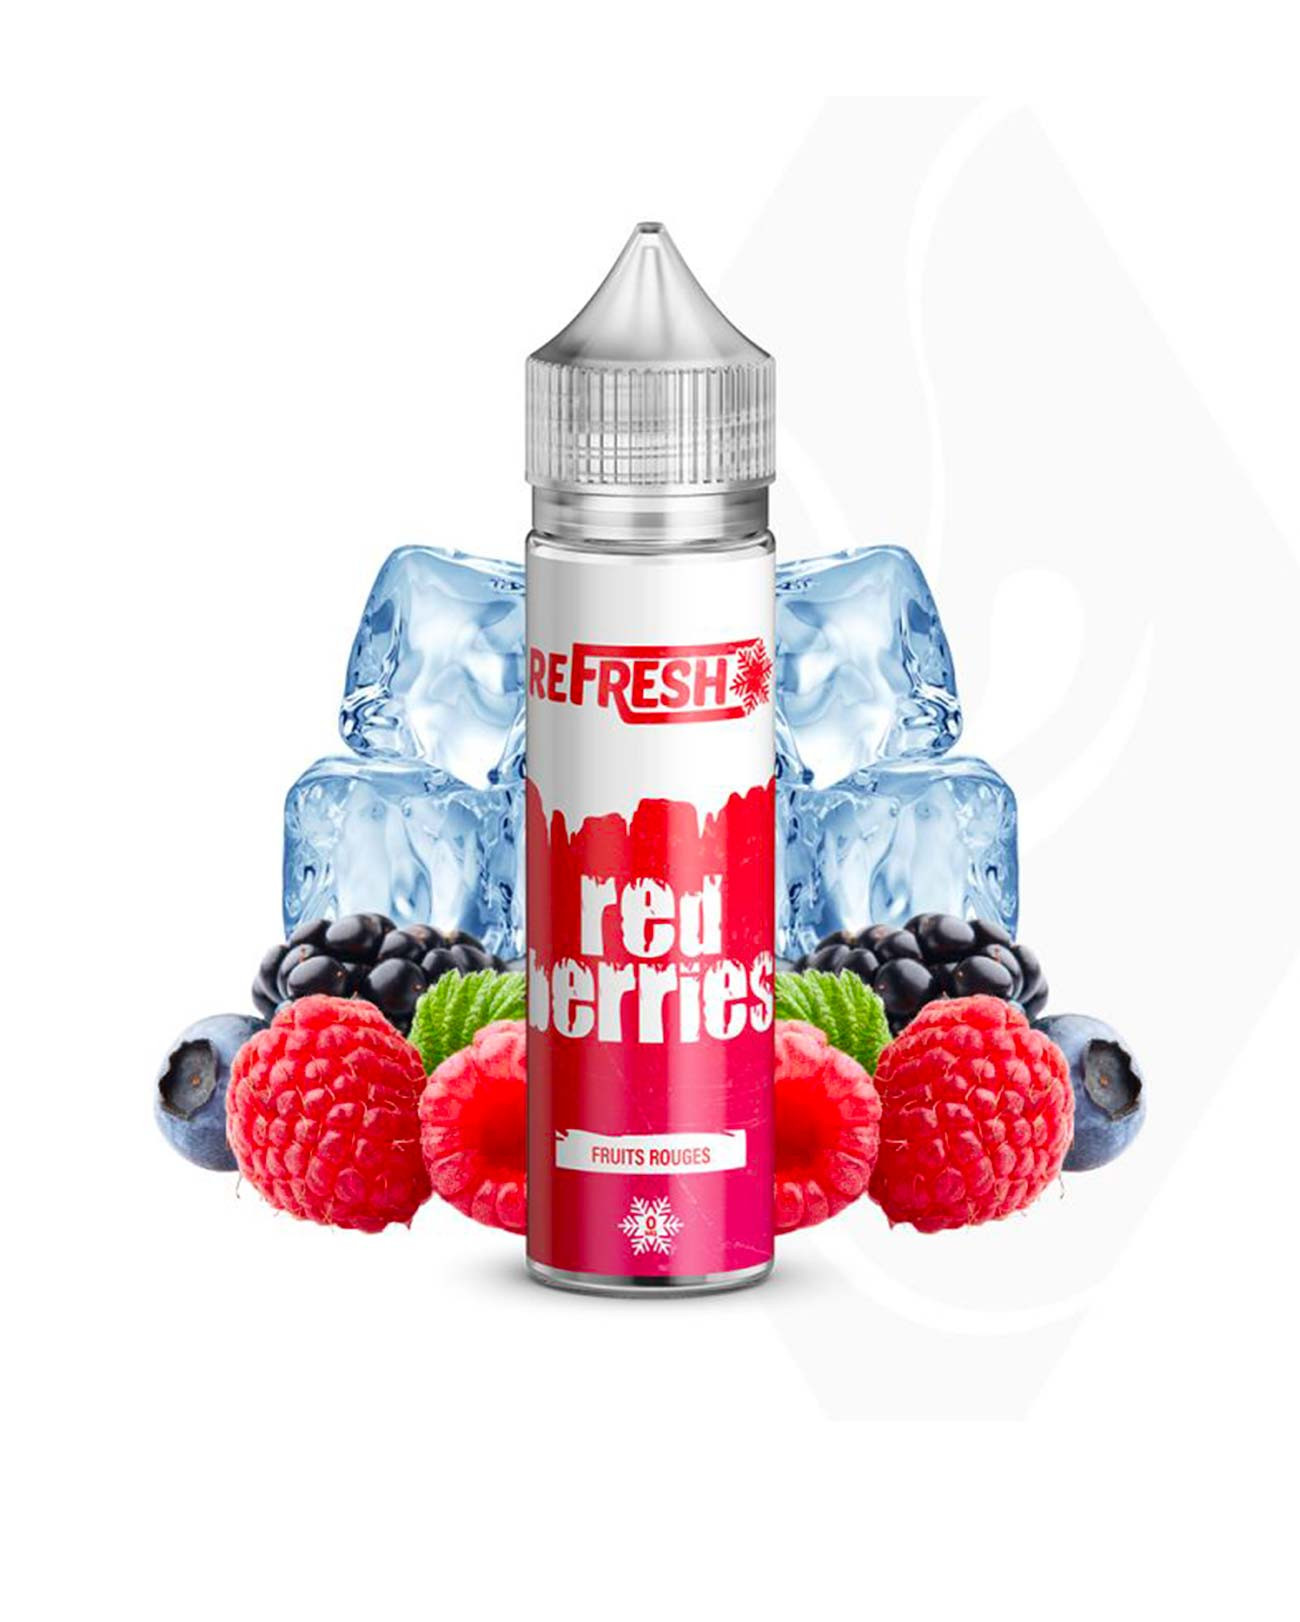 E-liquide grand format pour vapote Refresh Red Berries saveur fruits rouges, fraise, framboise et mûre